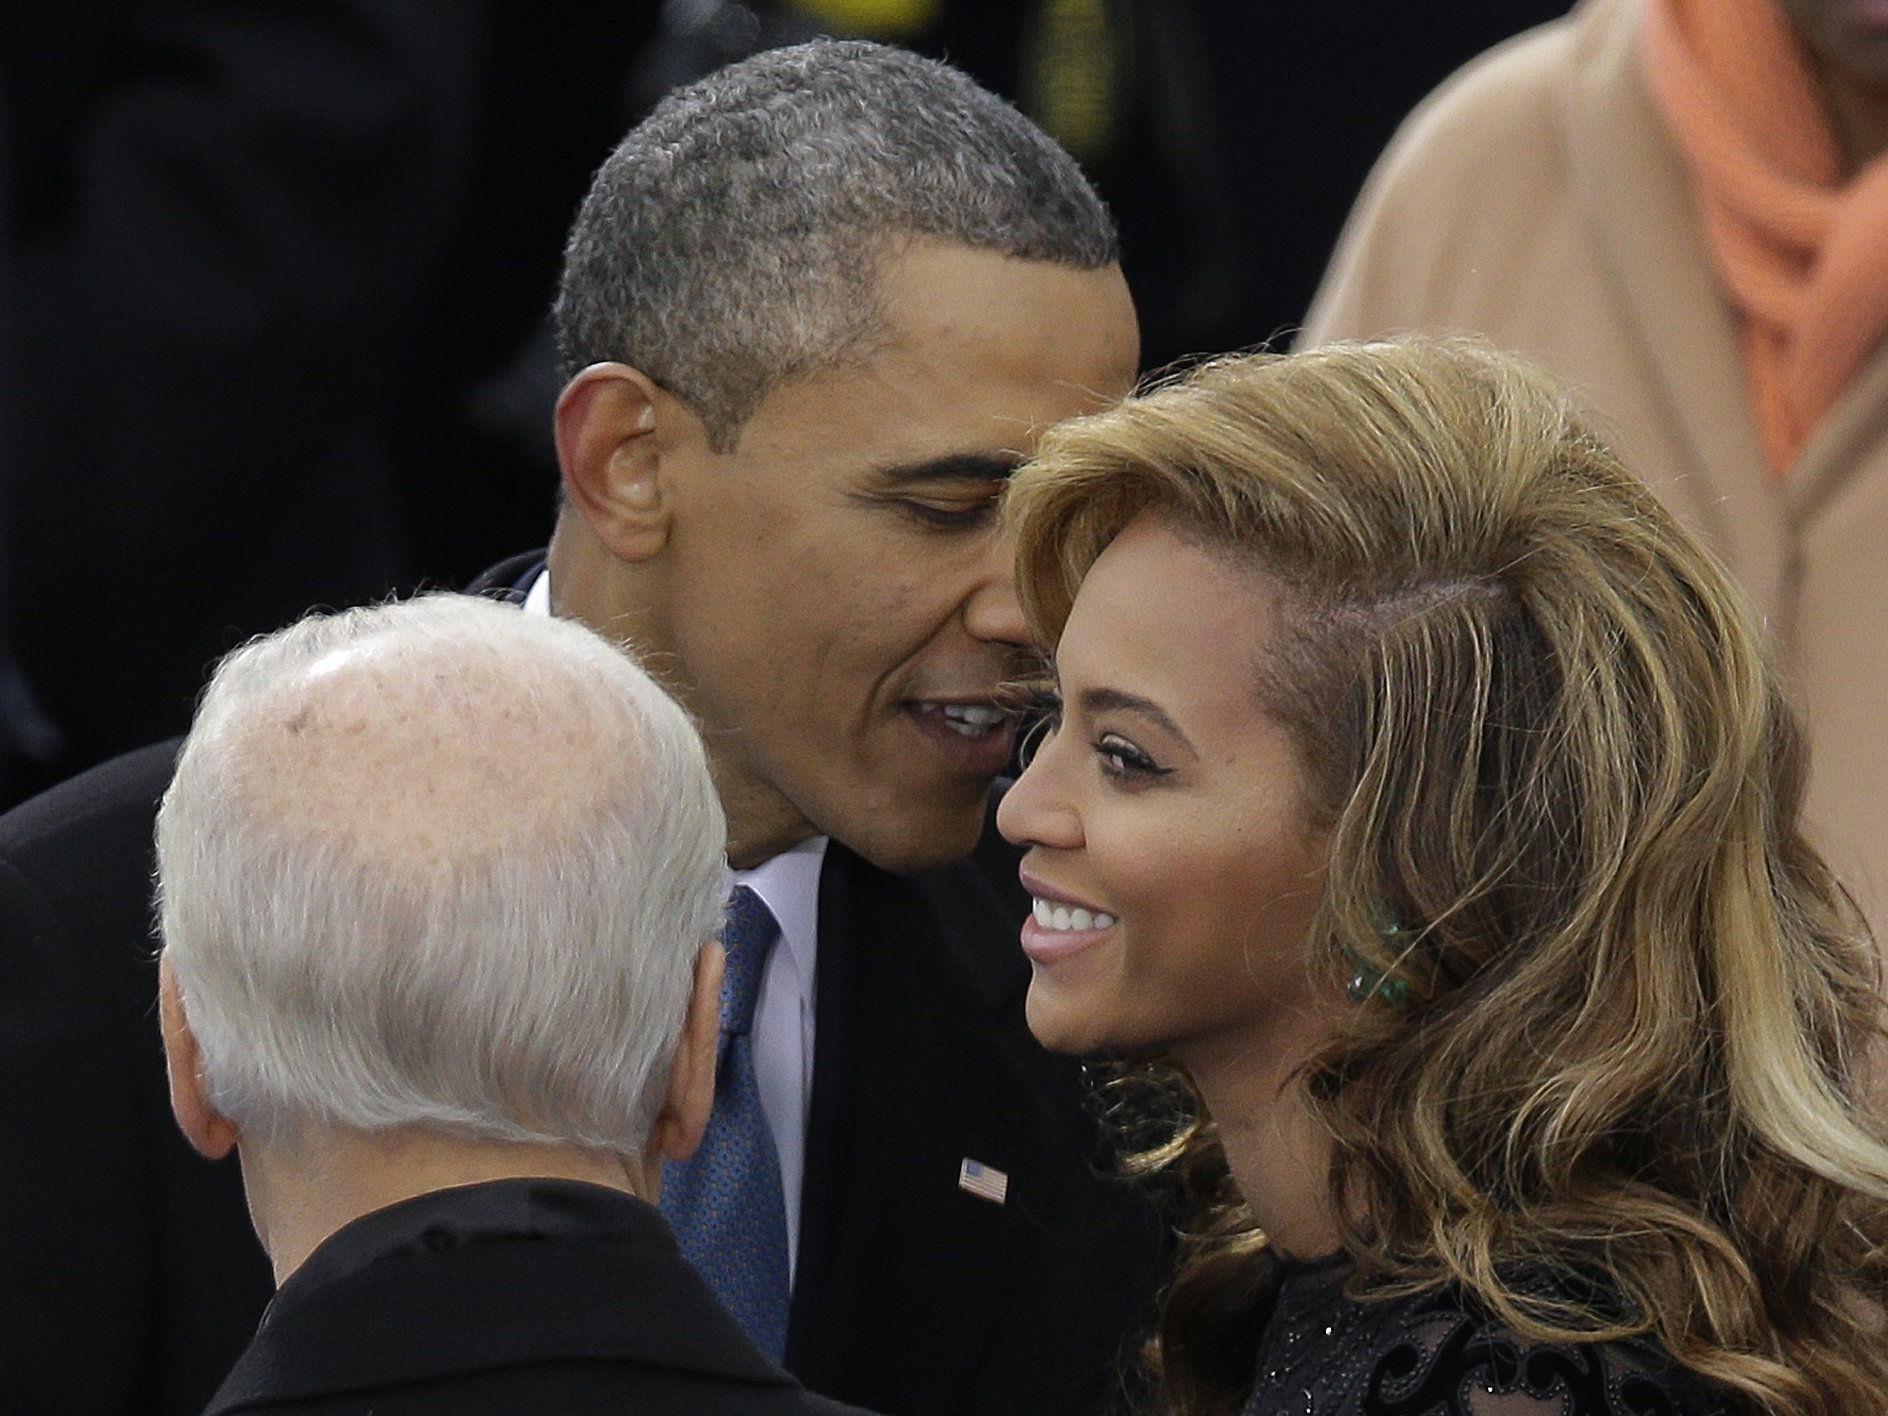 Das Gerücht um eine Affäre zwischen Beyoncé und Obama ging durch die ganze Welt.